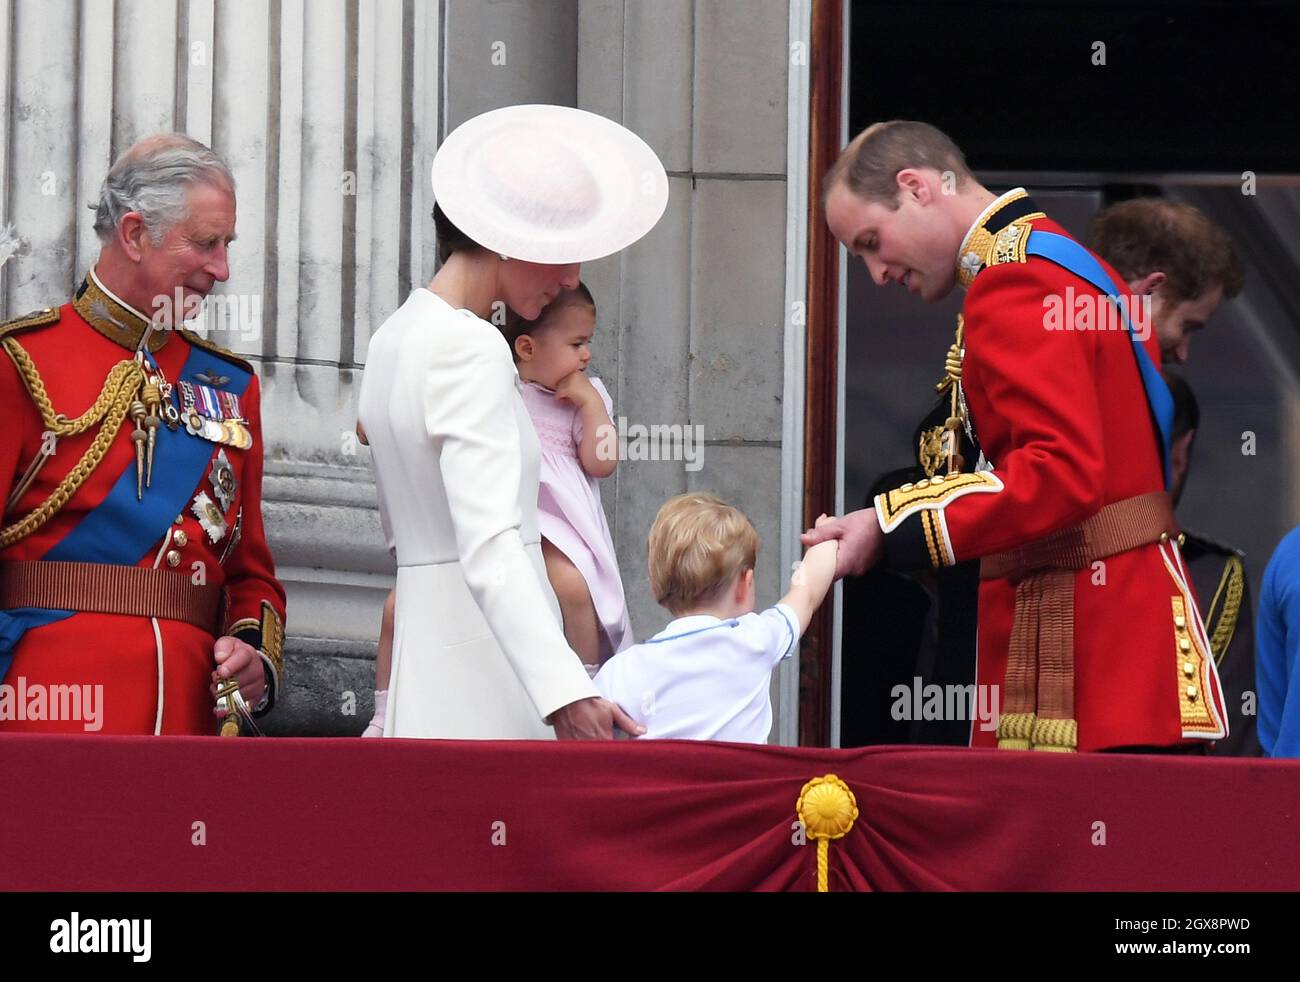 Prince de Galles, Catherine, duchesse de Cambridge, princesse Charlotte de Cambridge, prince George et prince William, duc de Cambridge, se tiennent sur le balcon de Buckingham Palace à la suite de la cérémonie de la Troop de la couleur à Londres qui marque le 90e anniversaire officiel de la Reine le 11 juin 2016 Banque D'Images